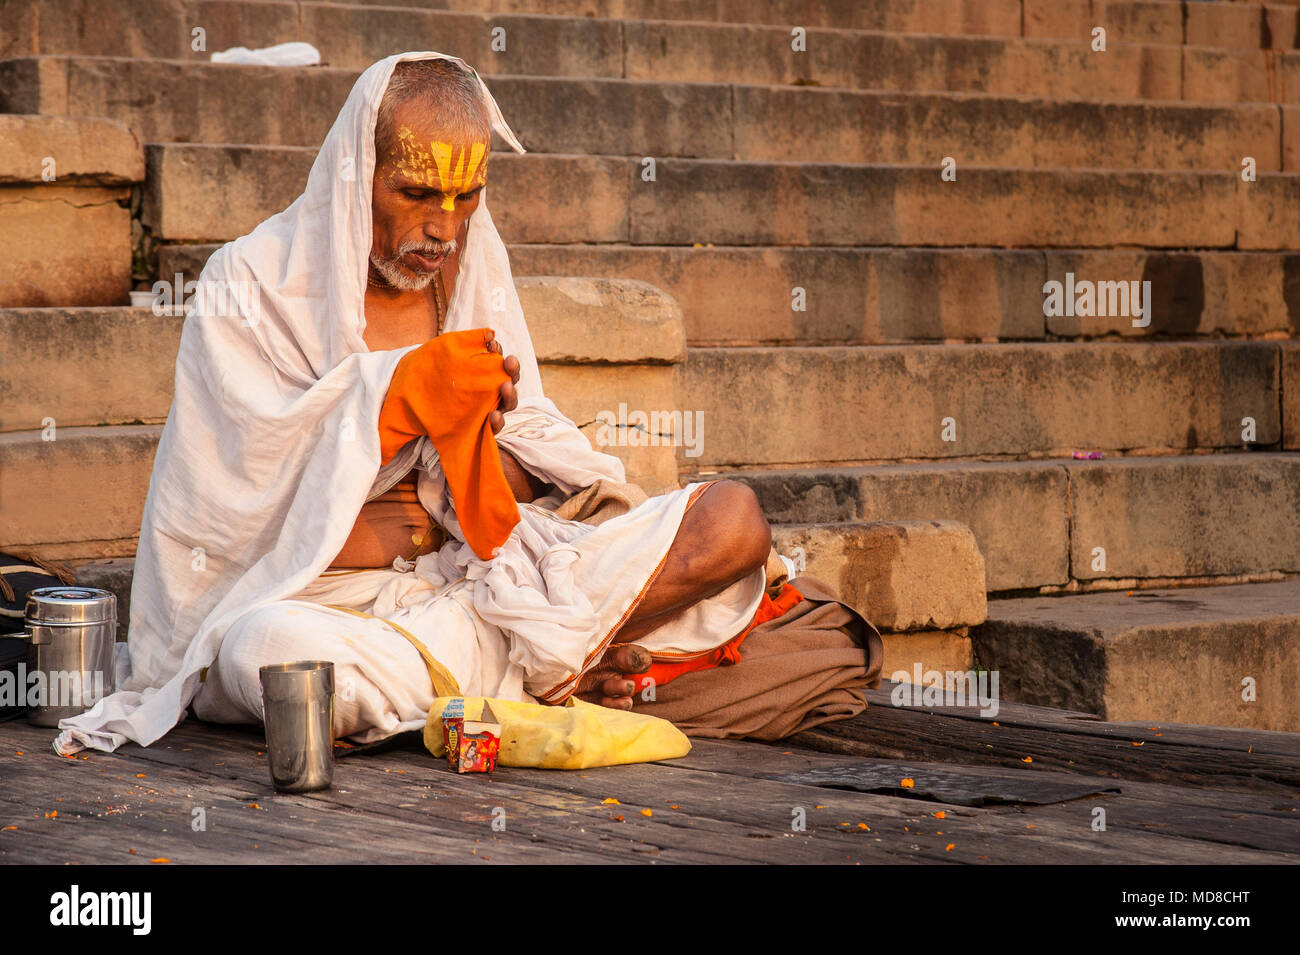 Un homme est assis en prière devant le Gange, sur les ghats de Varanasi Banque D'Images